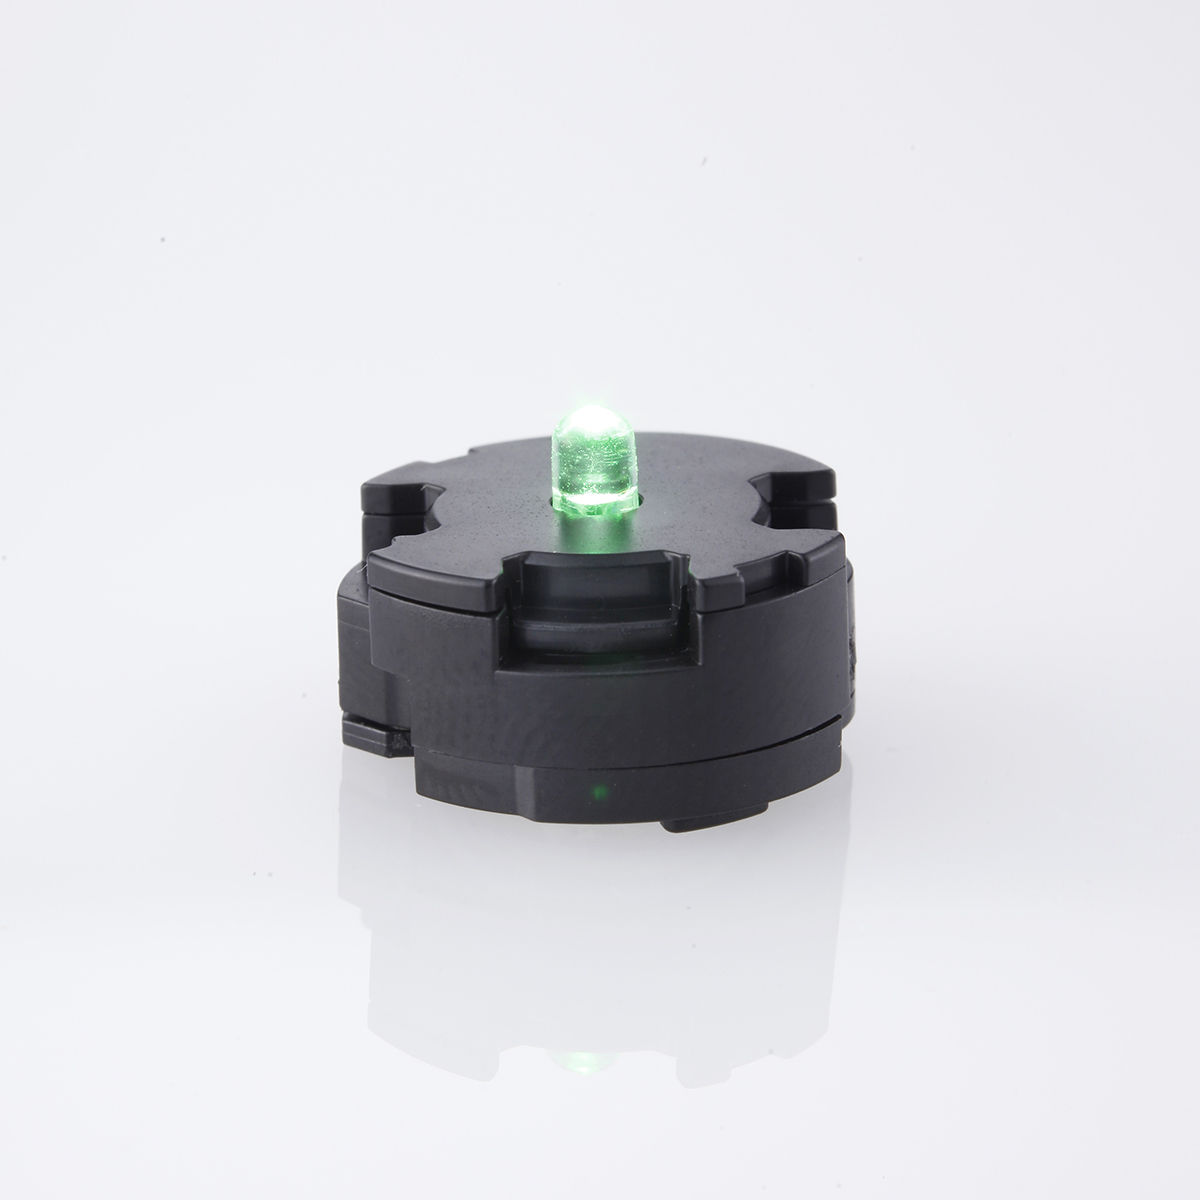 ガンプラ用LEDユニット2個セット(緑) 01